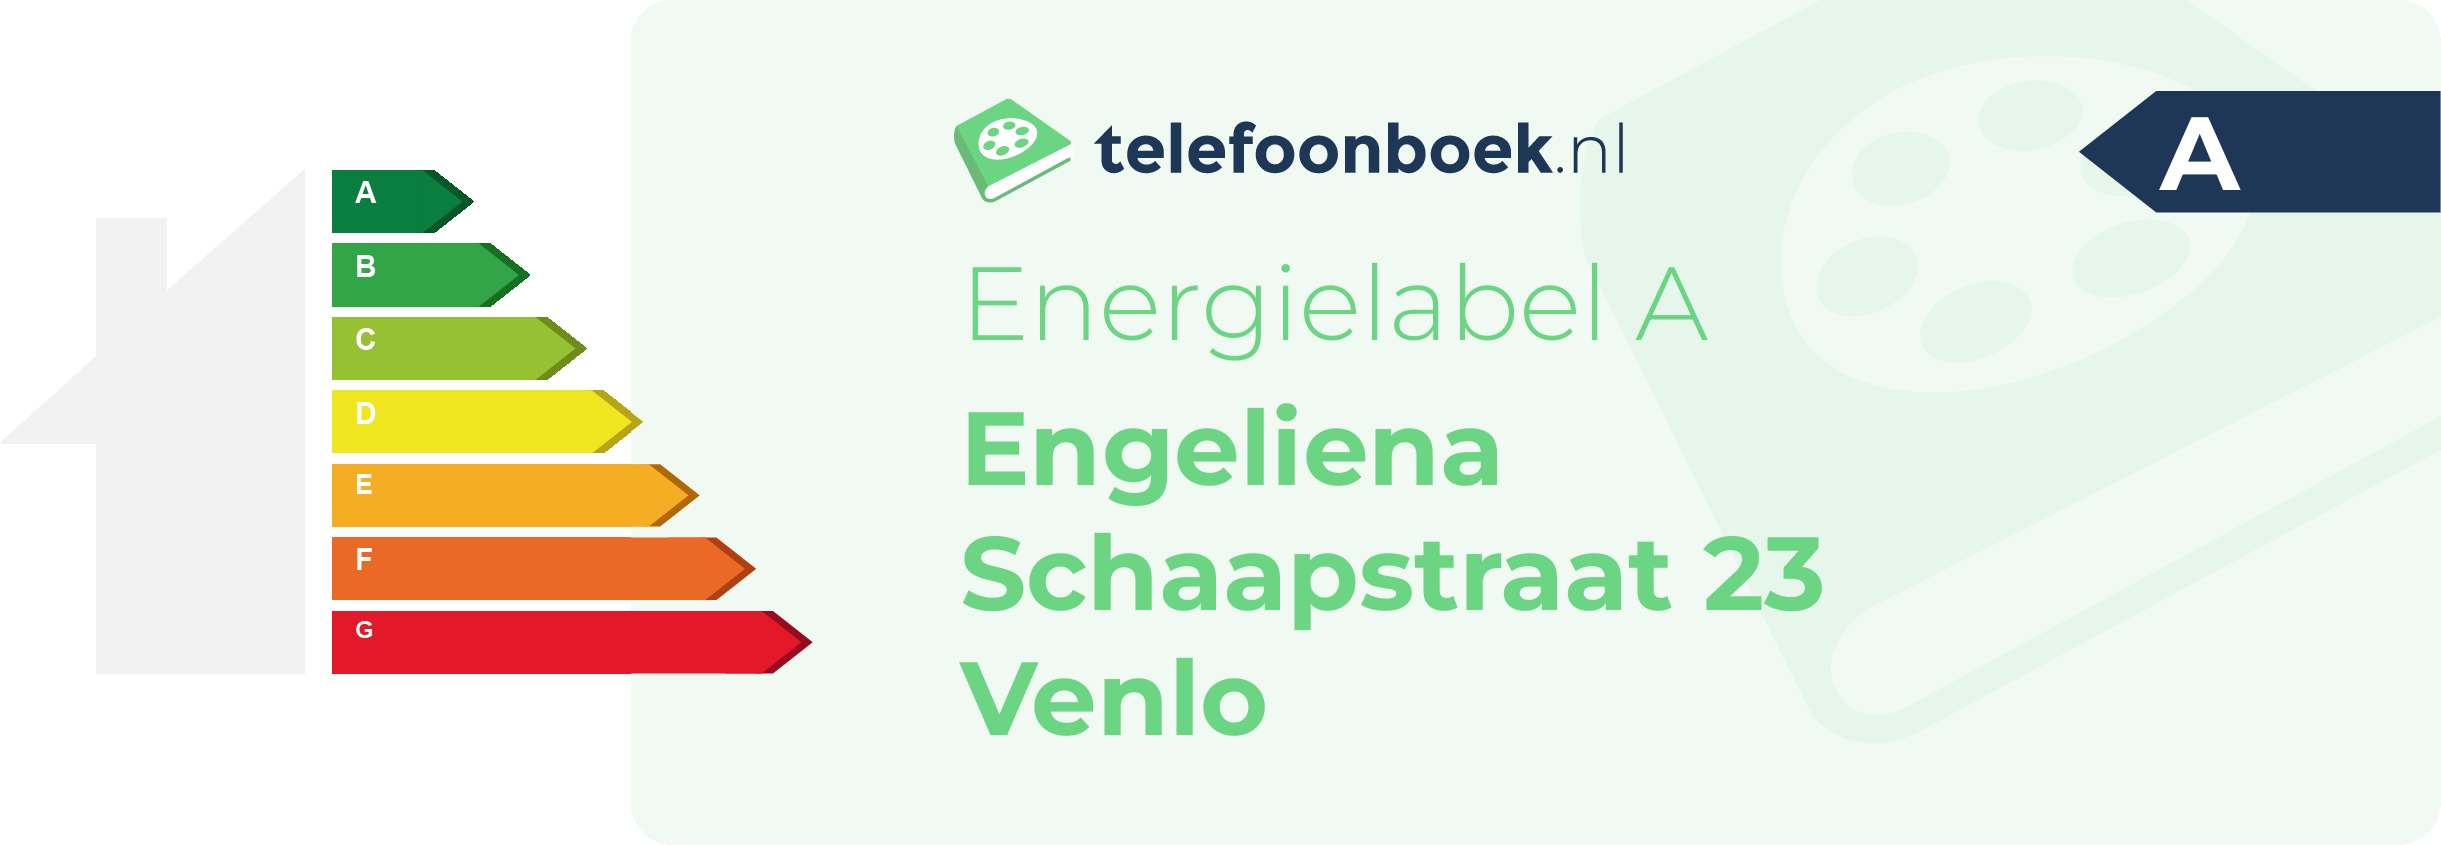 Energielabel Engeliena Schaapstraat 23 Venlo